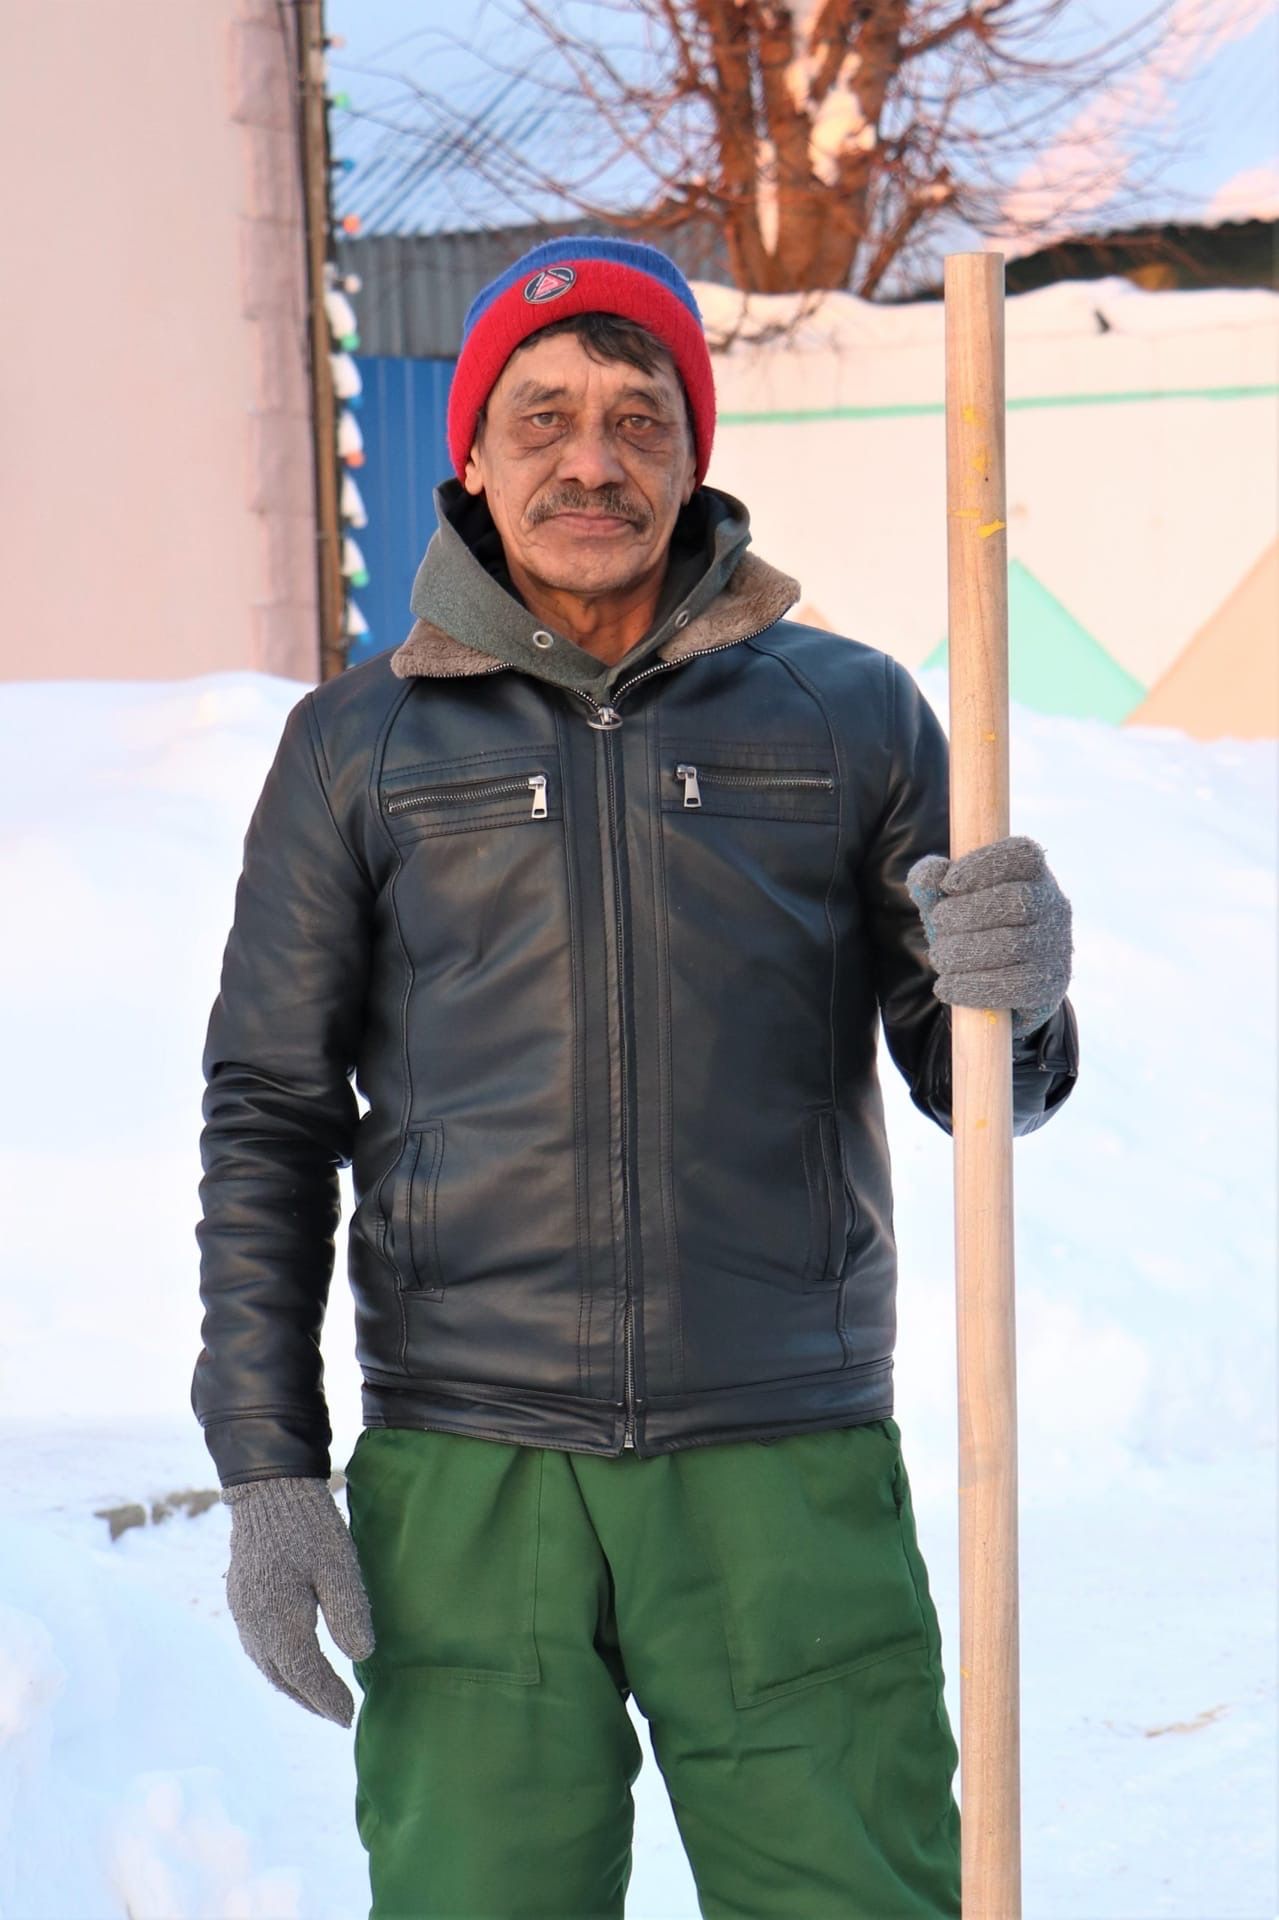 Они победили снегопад! Мамадышцы смотрят фоторепортаж с портретами всех работников «Мамадыш ЖКУ»